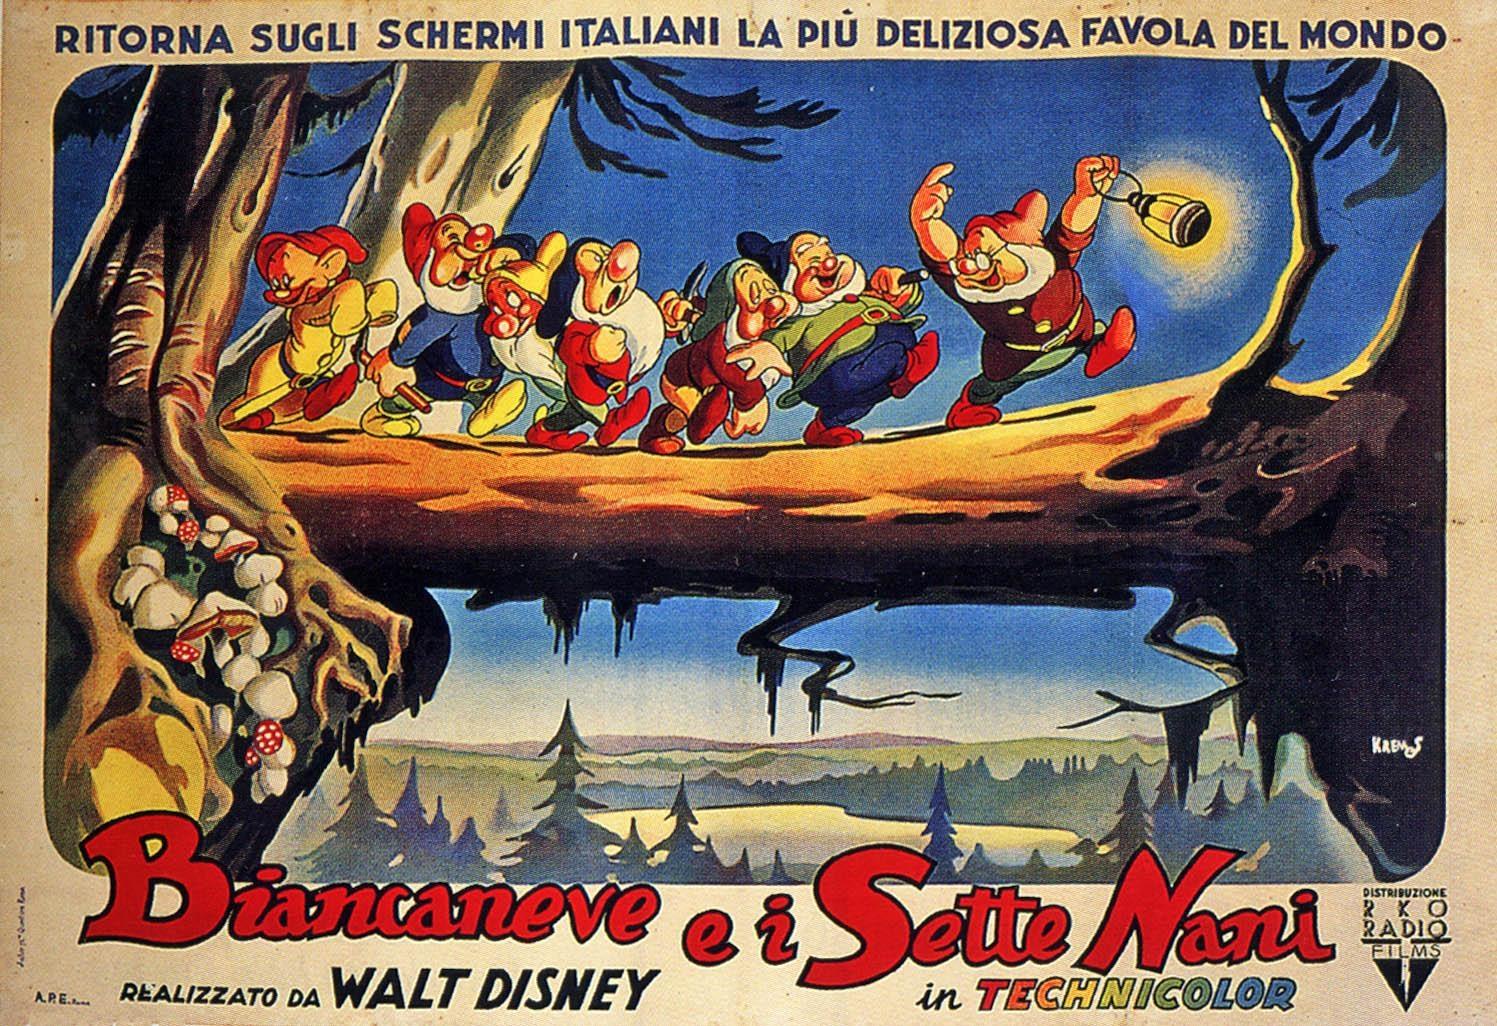 Постер фильма Белоснежка и семь гномов | Snow White and the Seven Dwarfs